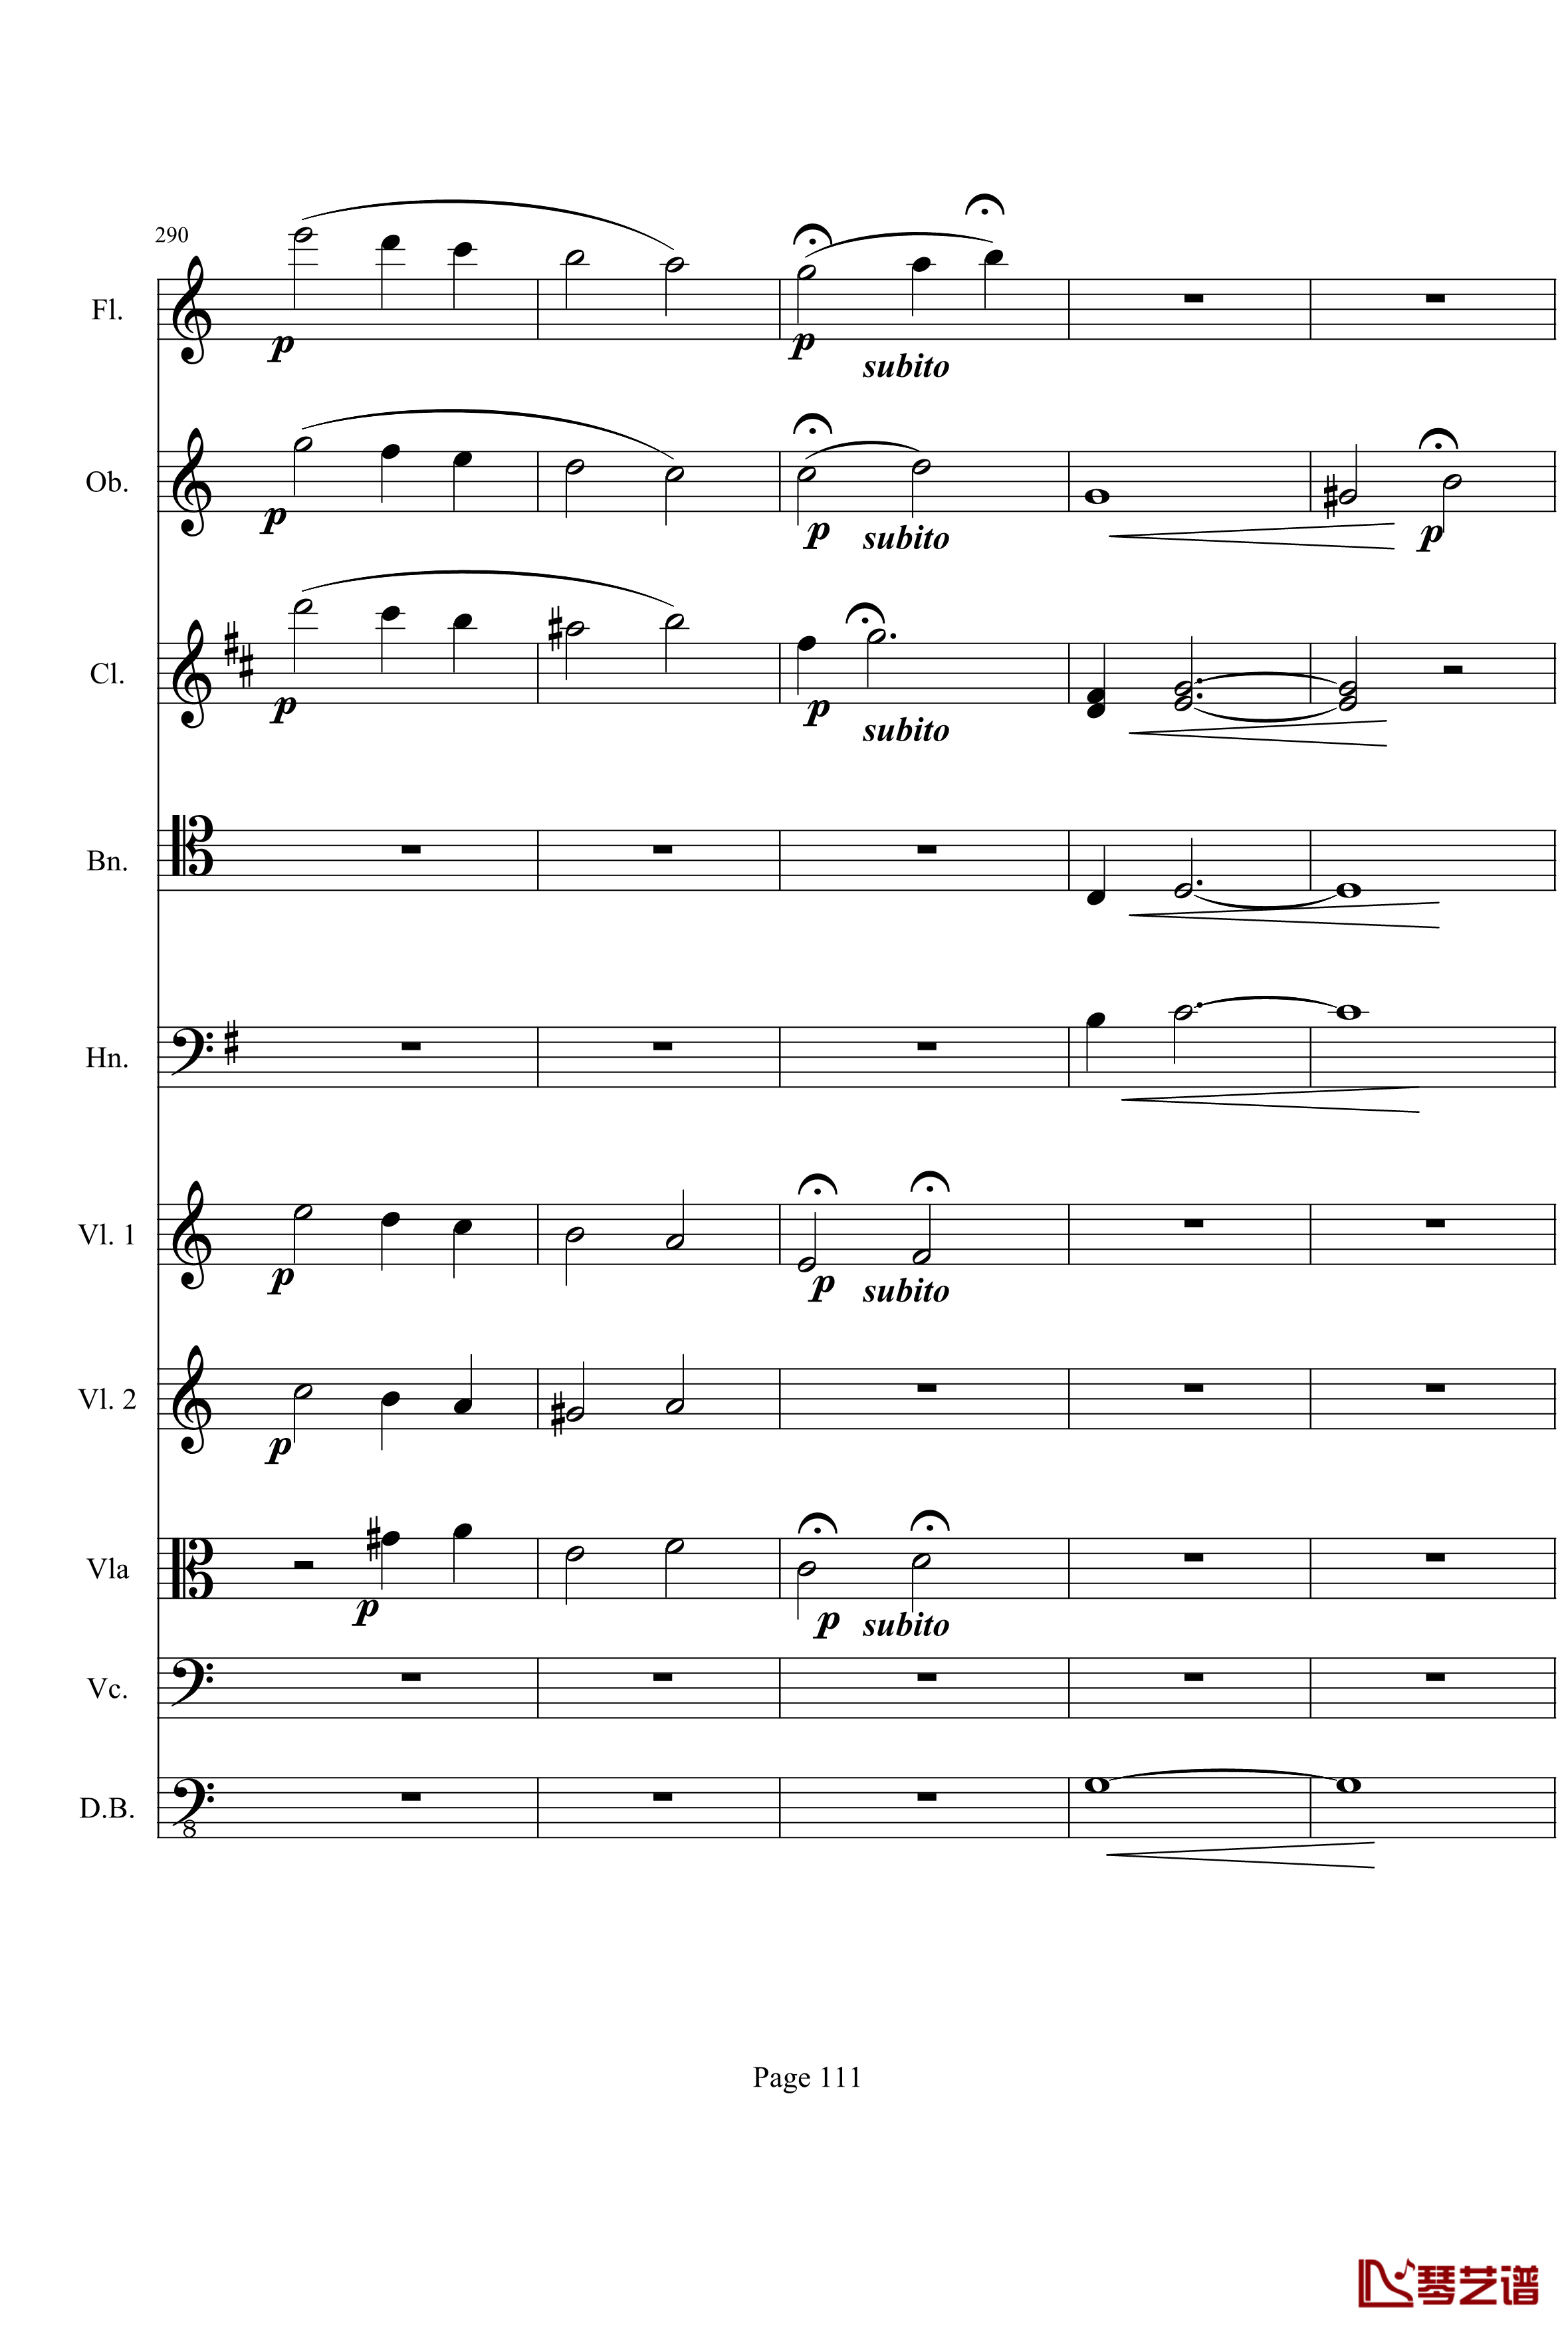 奏鸣曲之交响钢琴谱-第21-Ⅰ-贝多芬-beethoven111